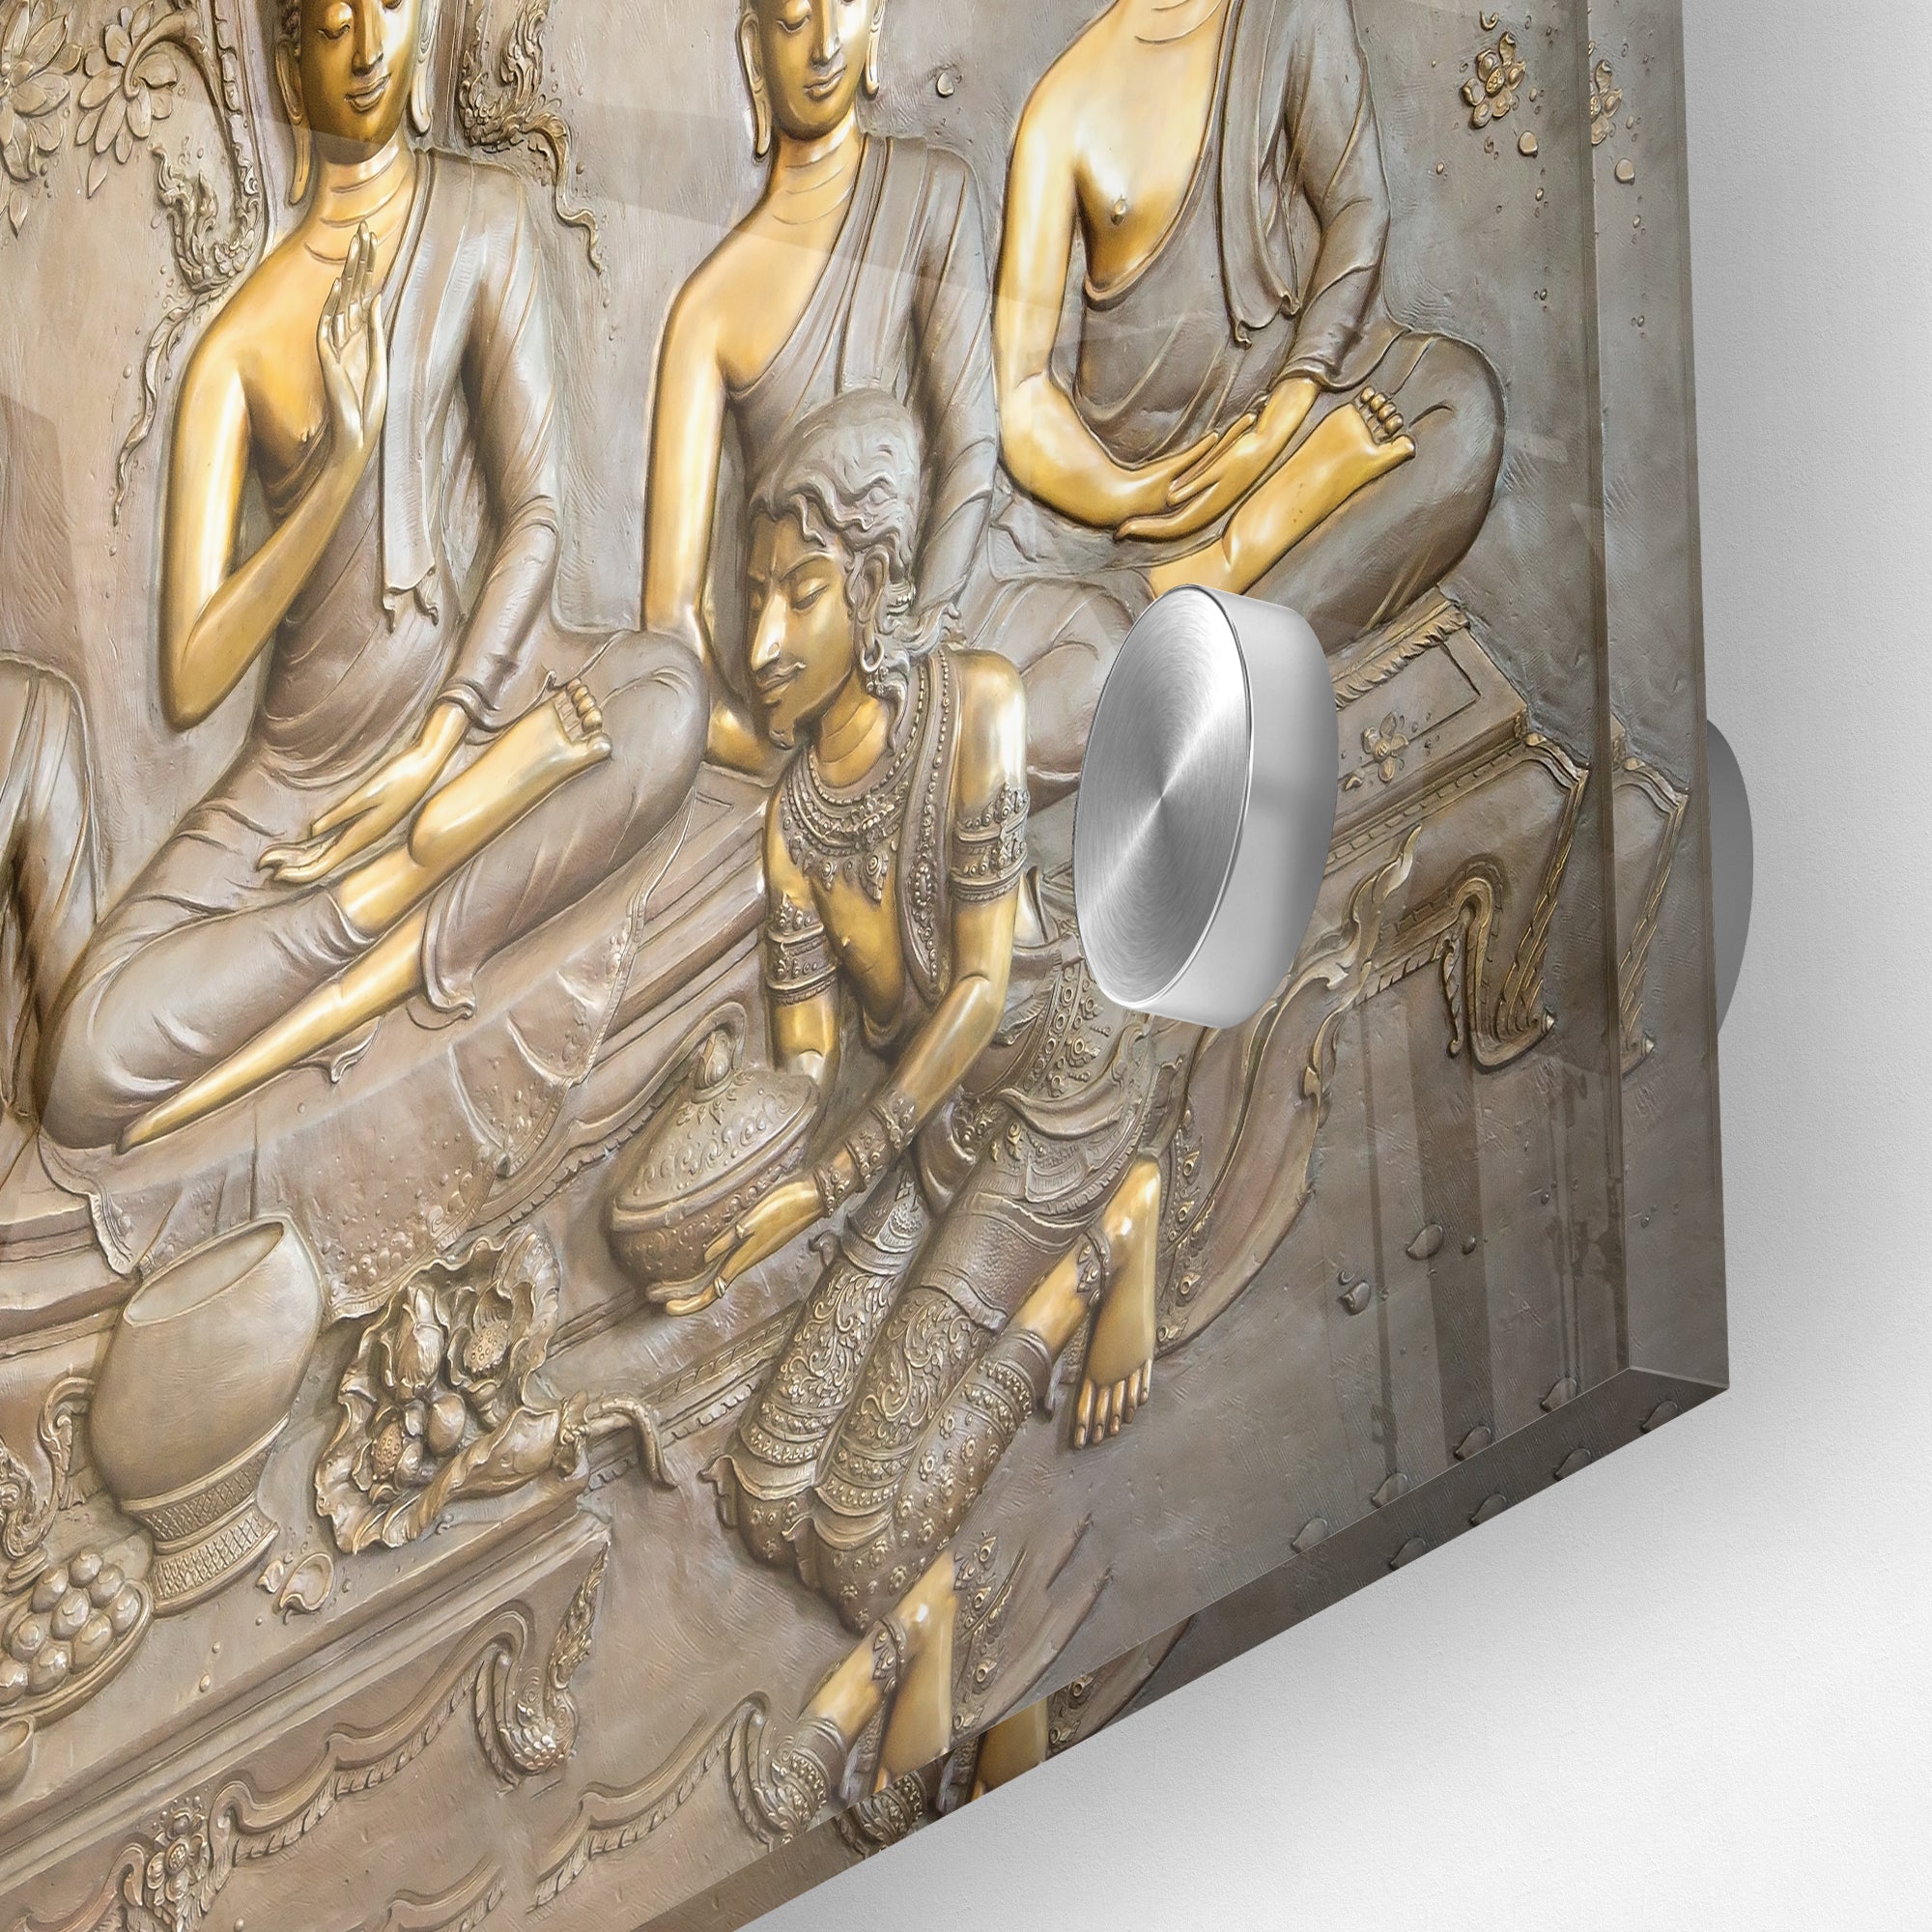 Spiritual Gautam Buddha Premium Acrylic Wall Painting